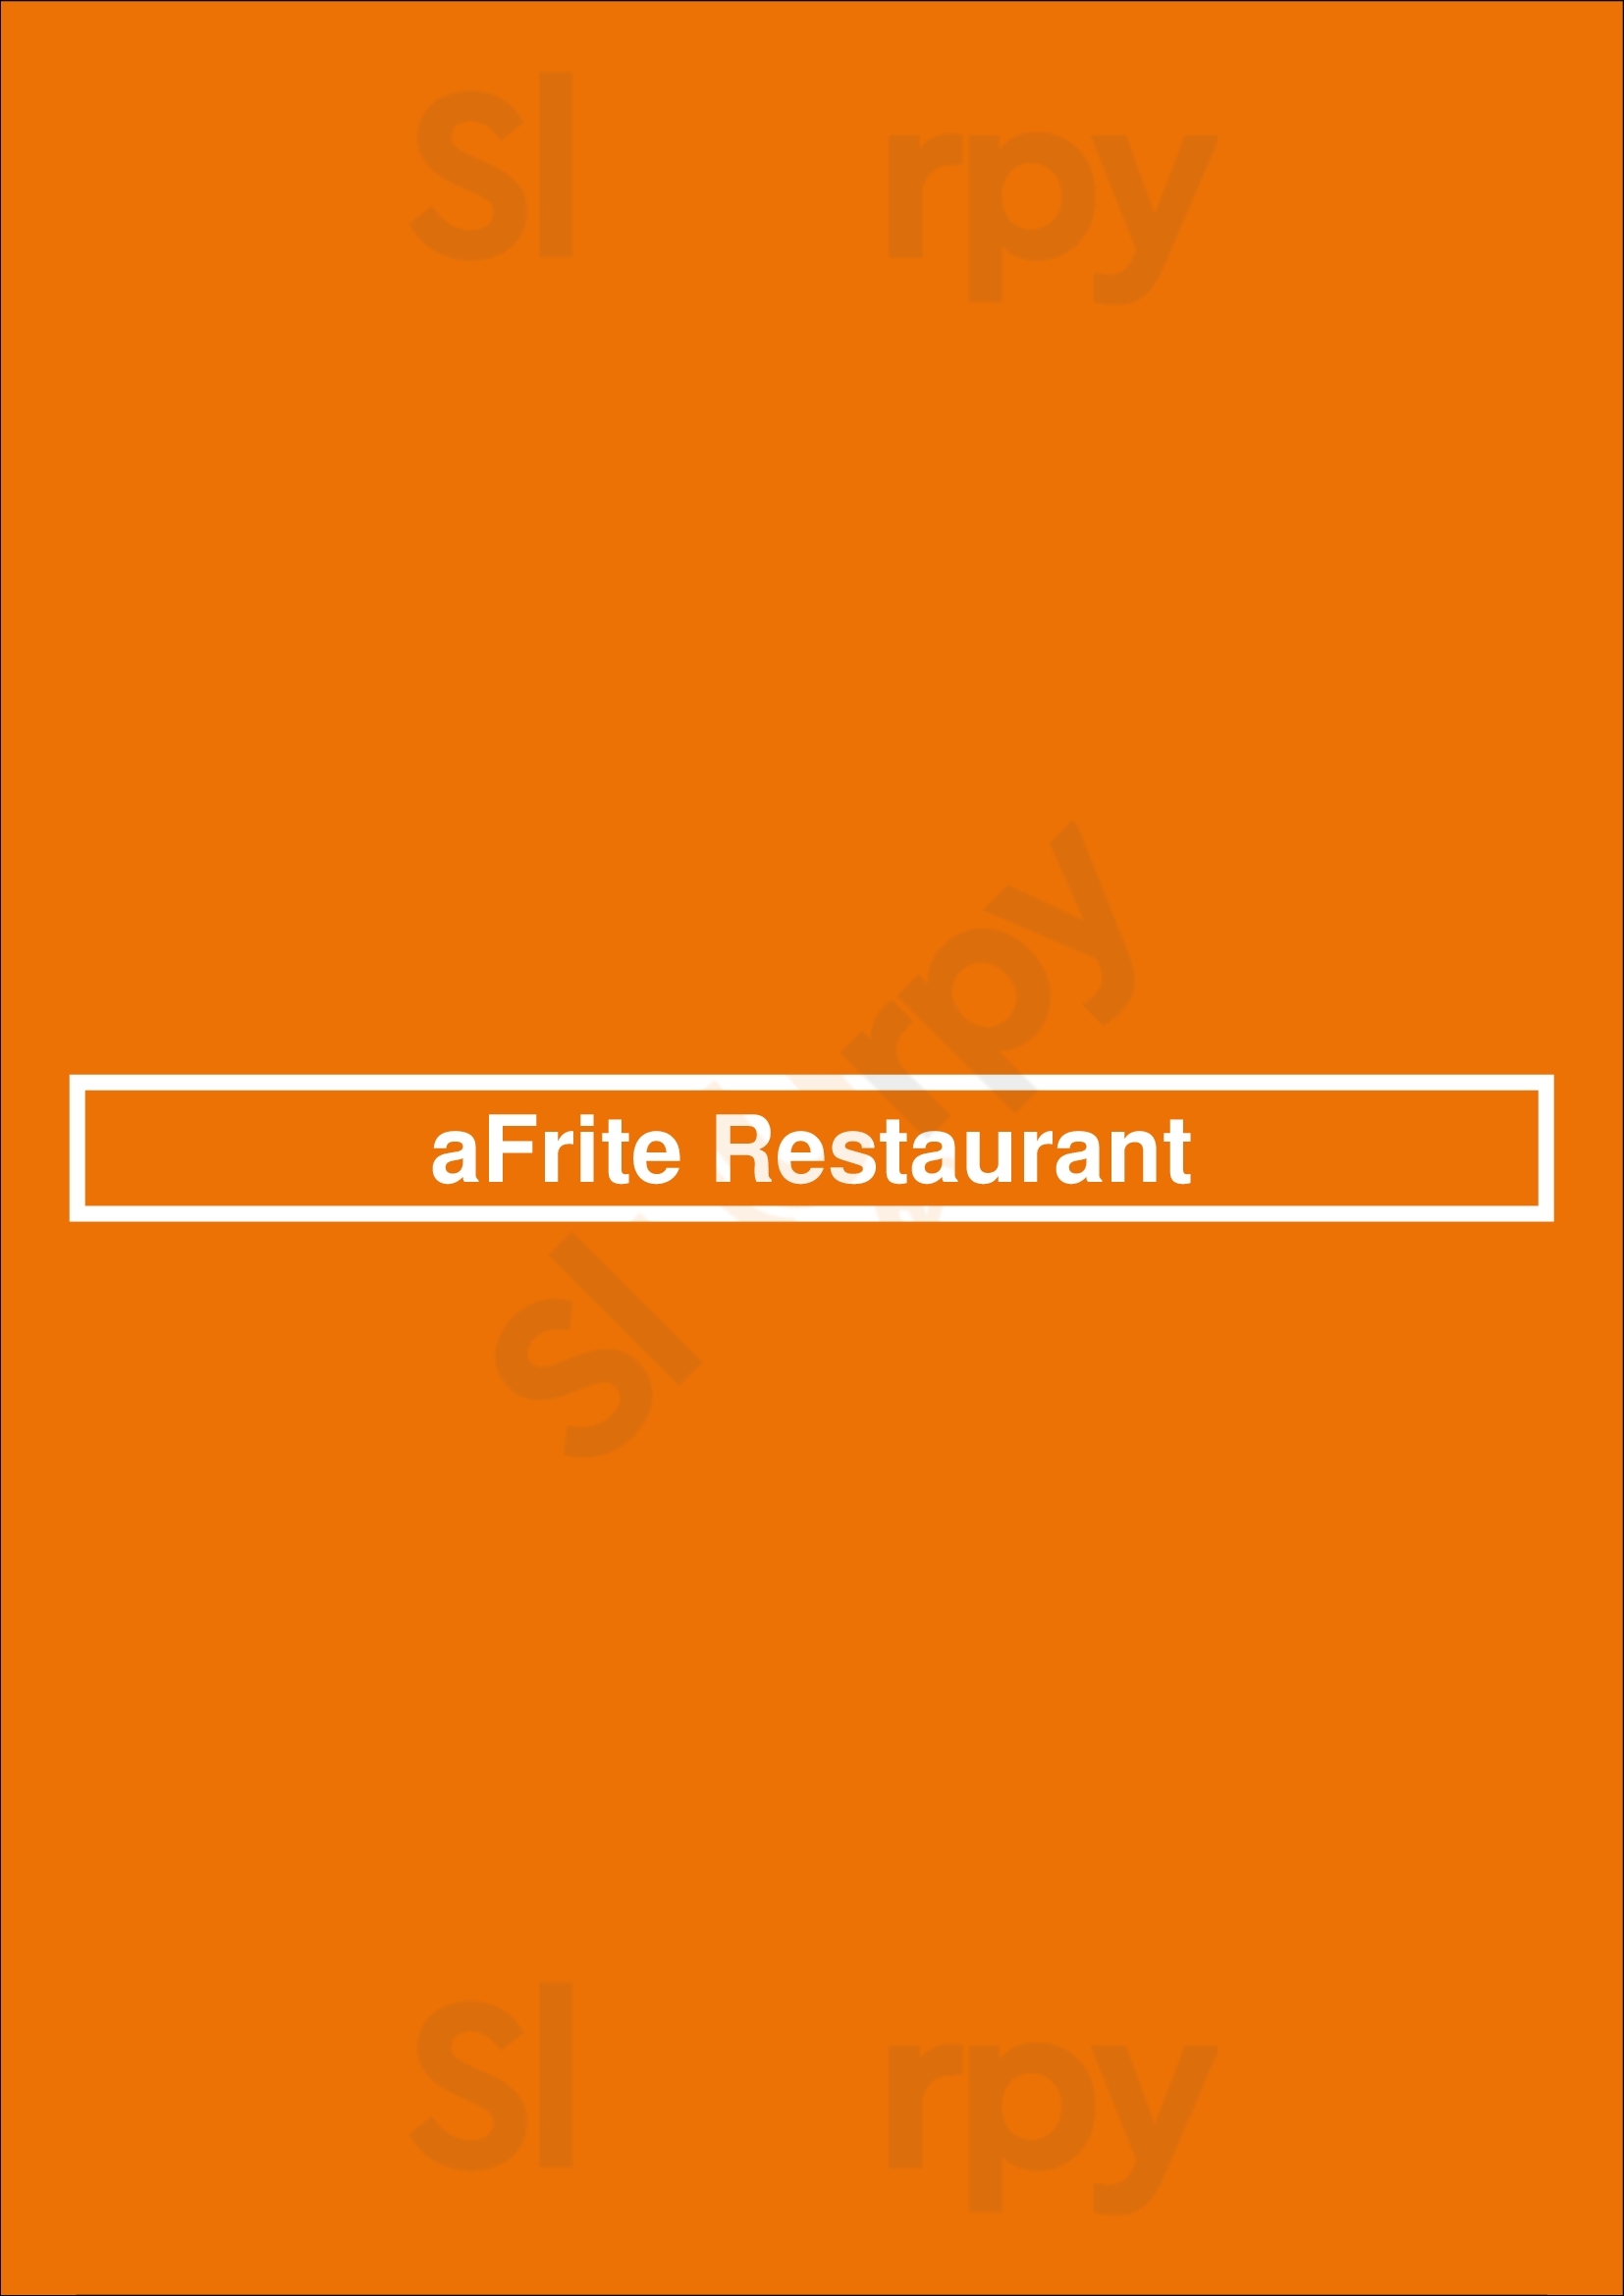 Afrite Restaurant Halifax Menu - 1